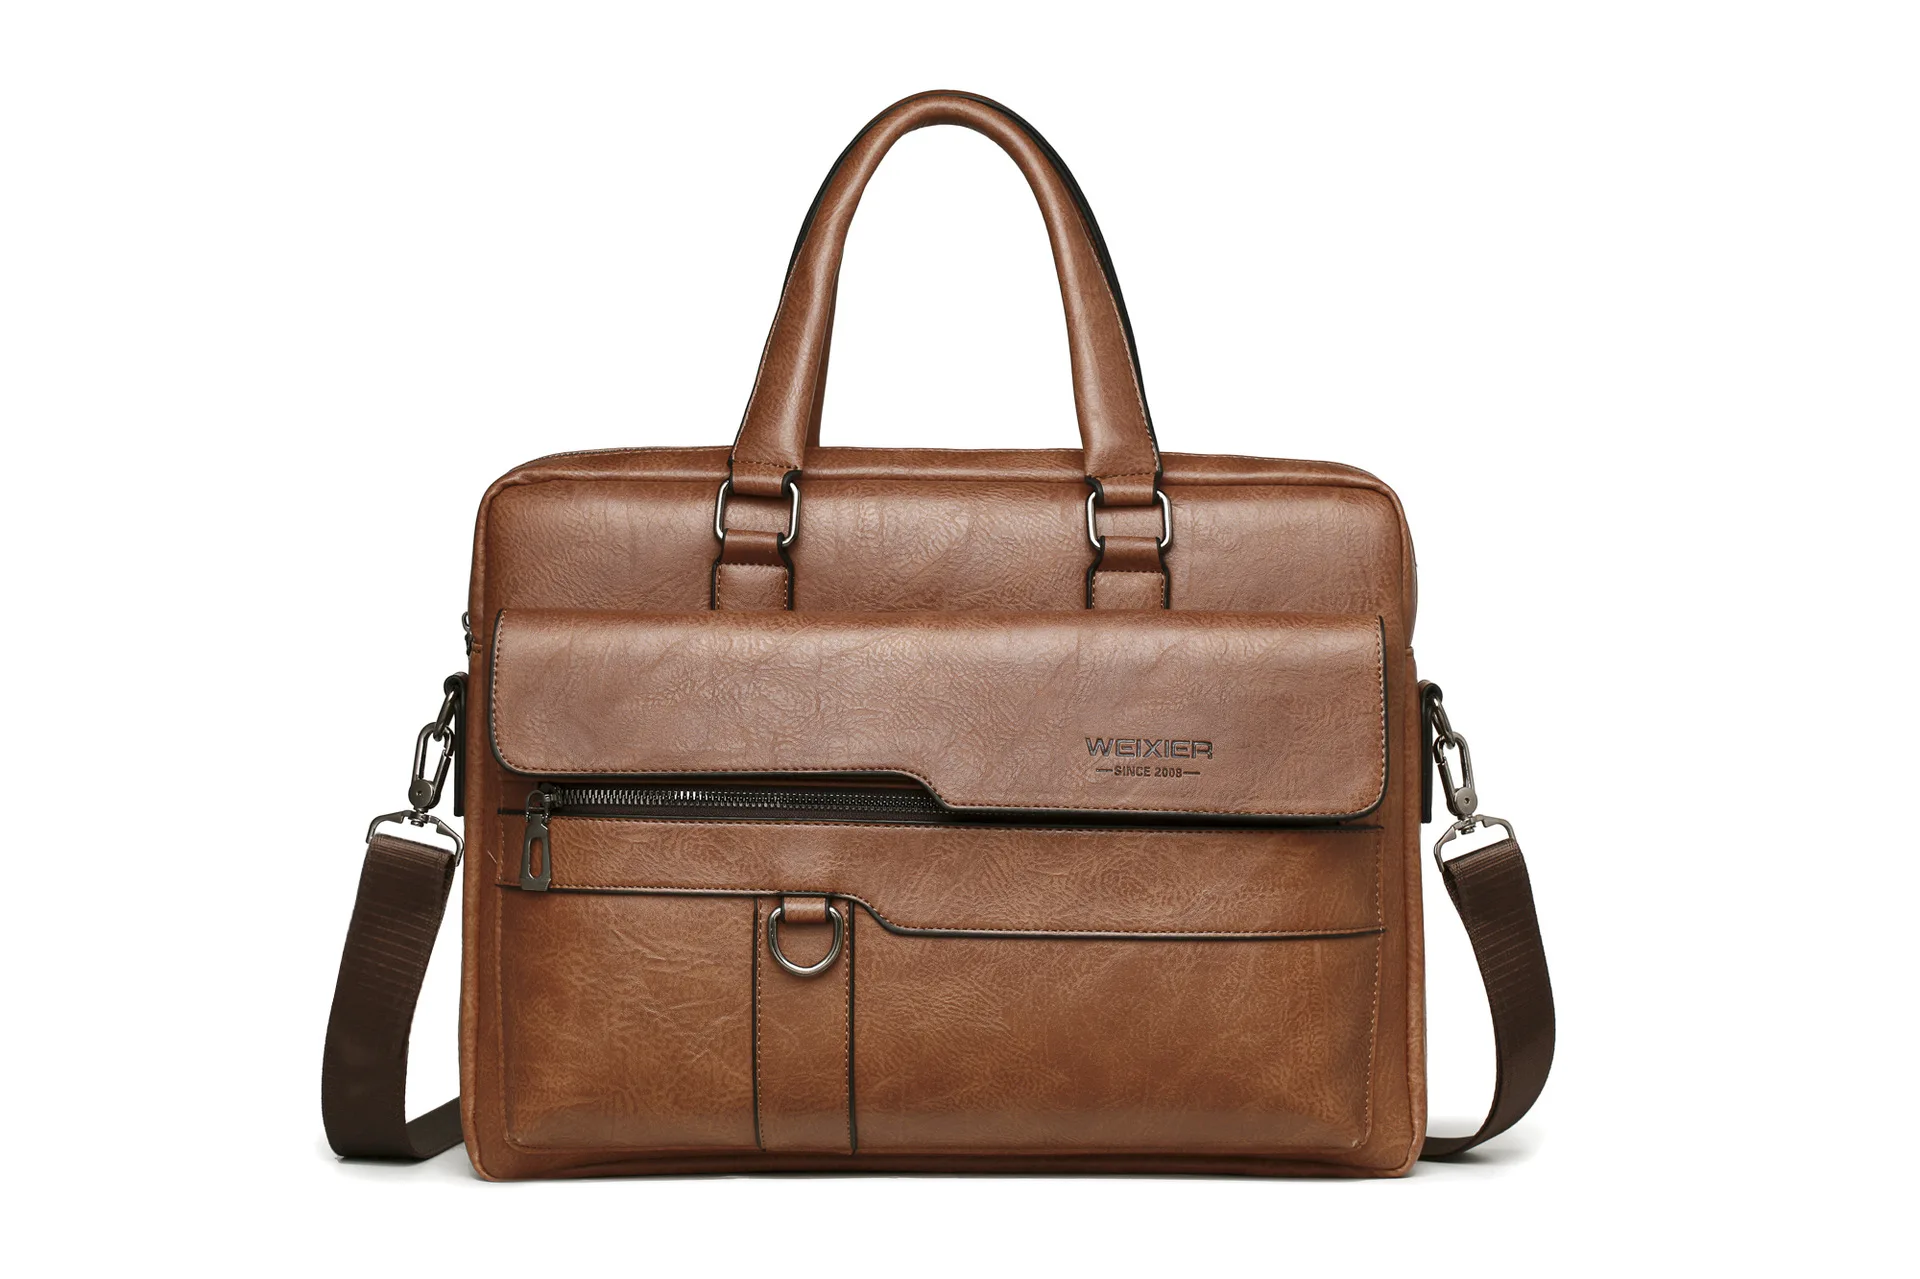 New hot selling men's crossbody bag shoulder bag Crossbody bag backpack travel fashion trend Business travel briefcase